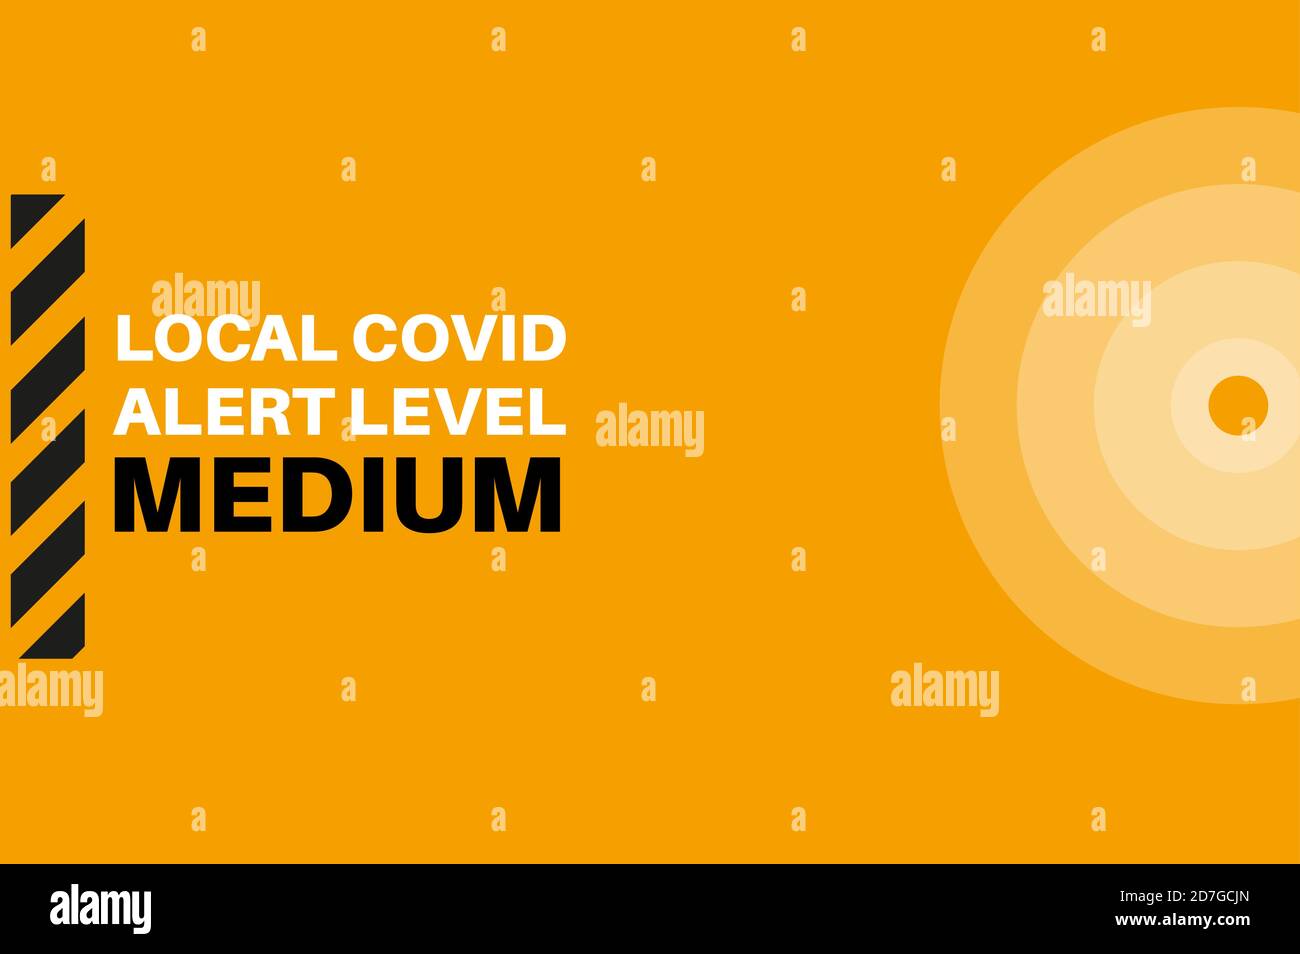 Medium Local Covid Alert Level (Tier 1) Vector Illustration Stock Vector